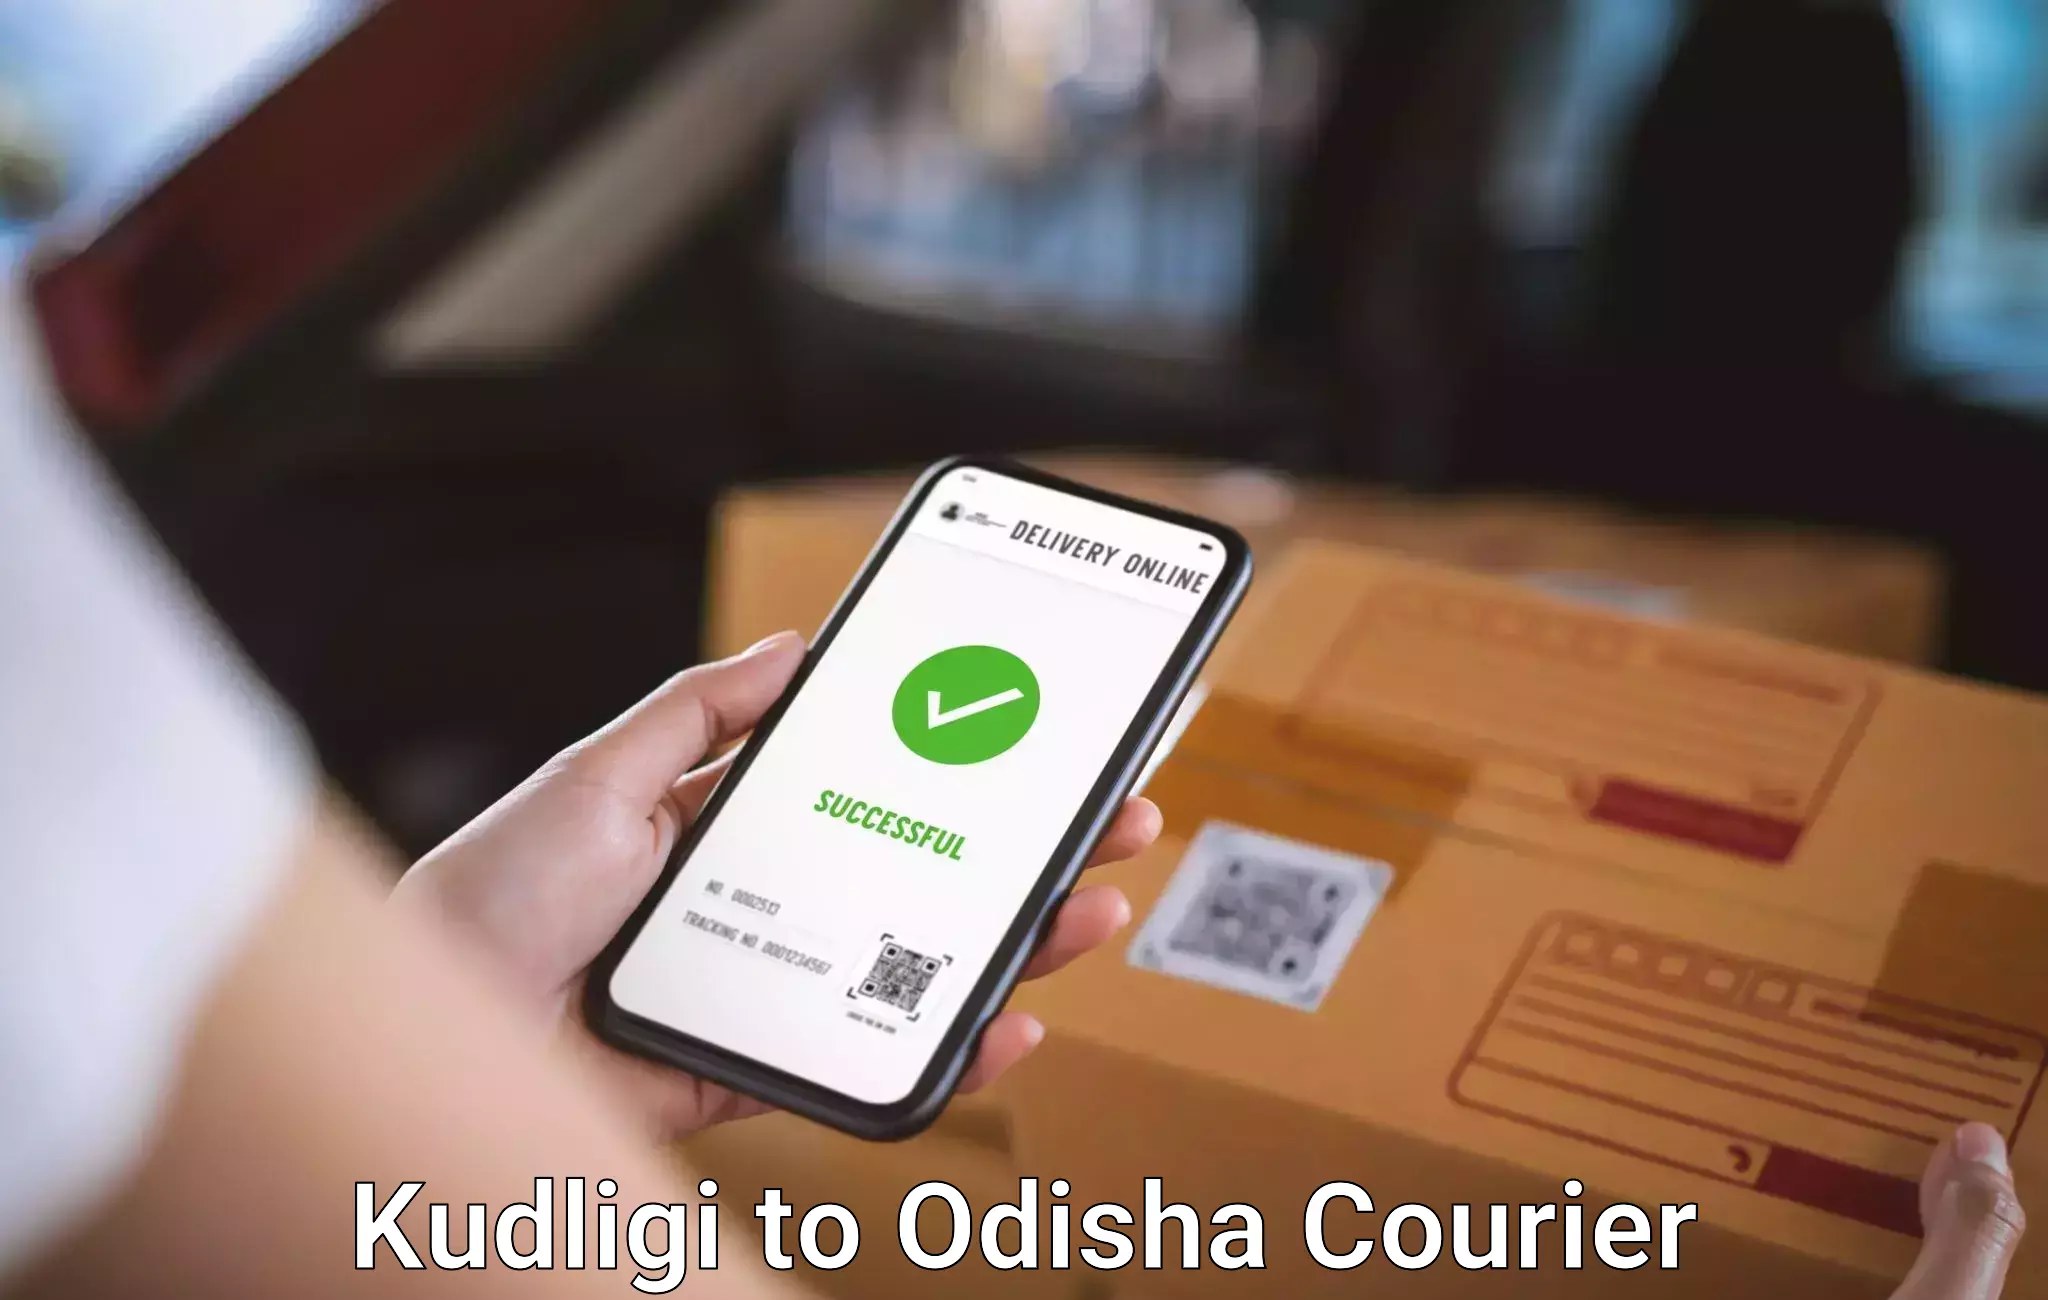 Luggage delivery optimization Kudligi to Kishorenagar